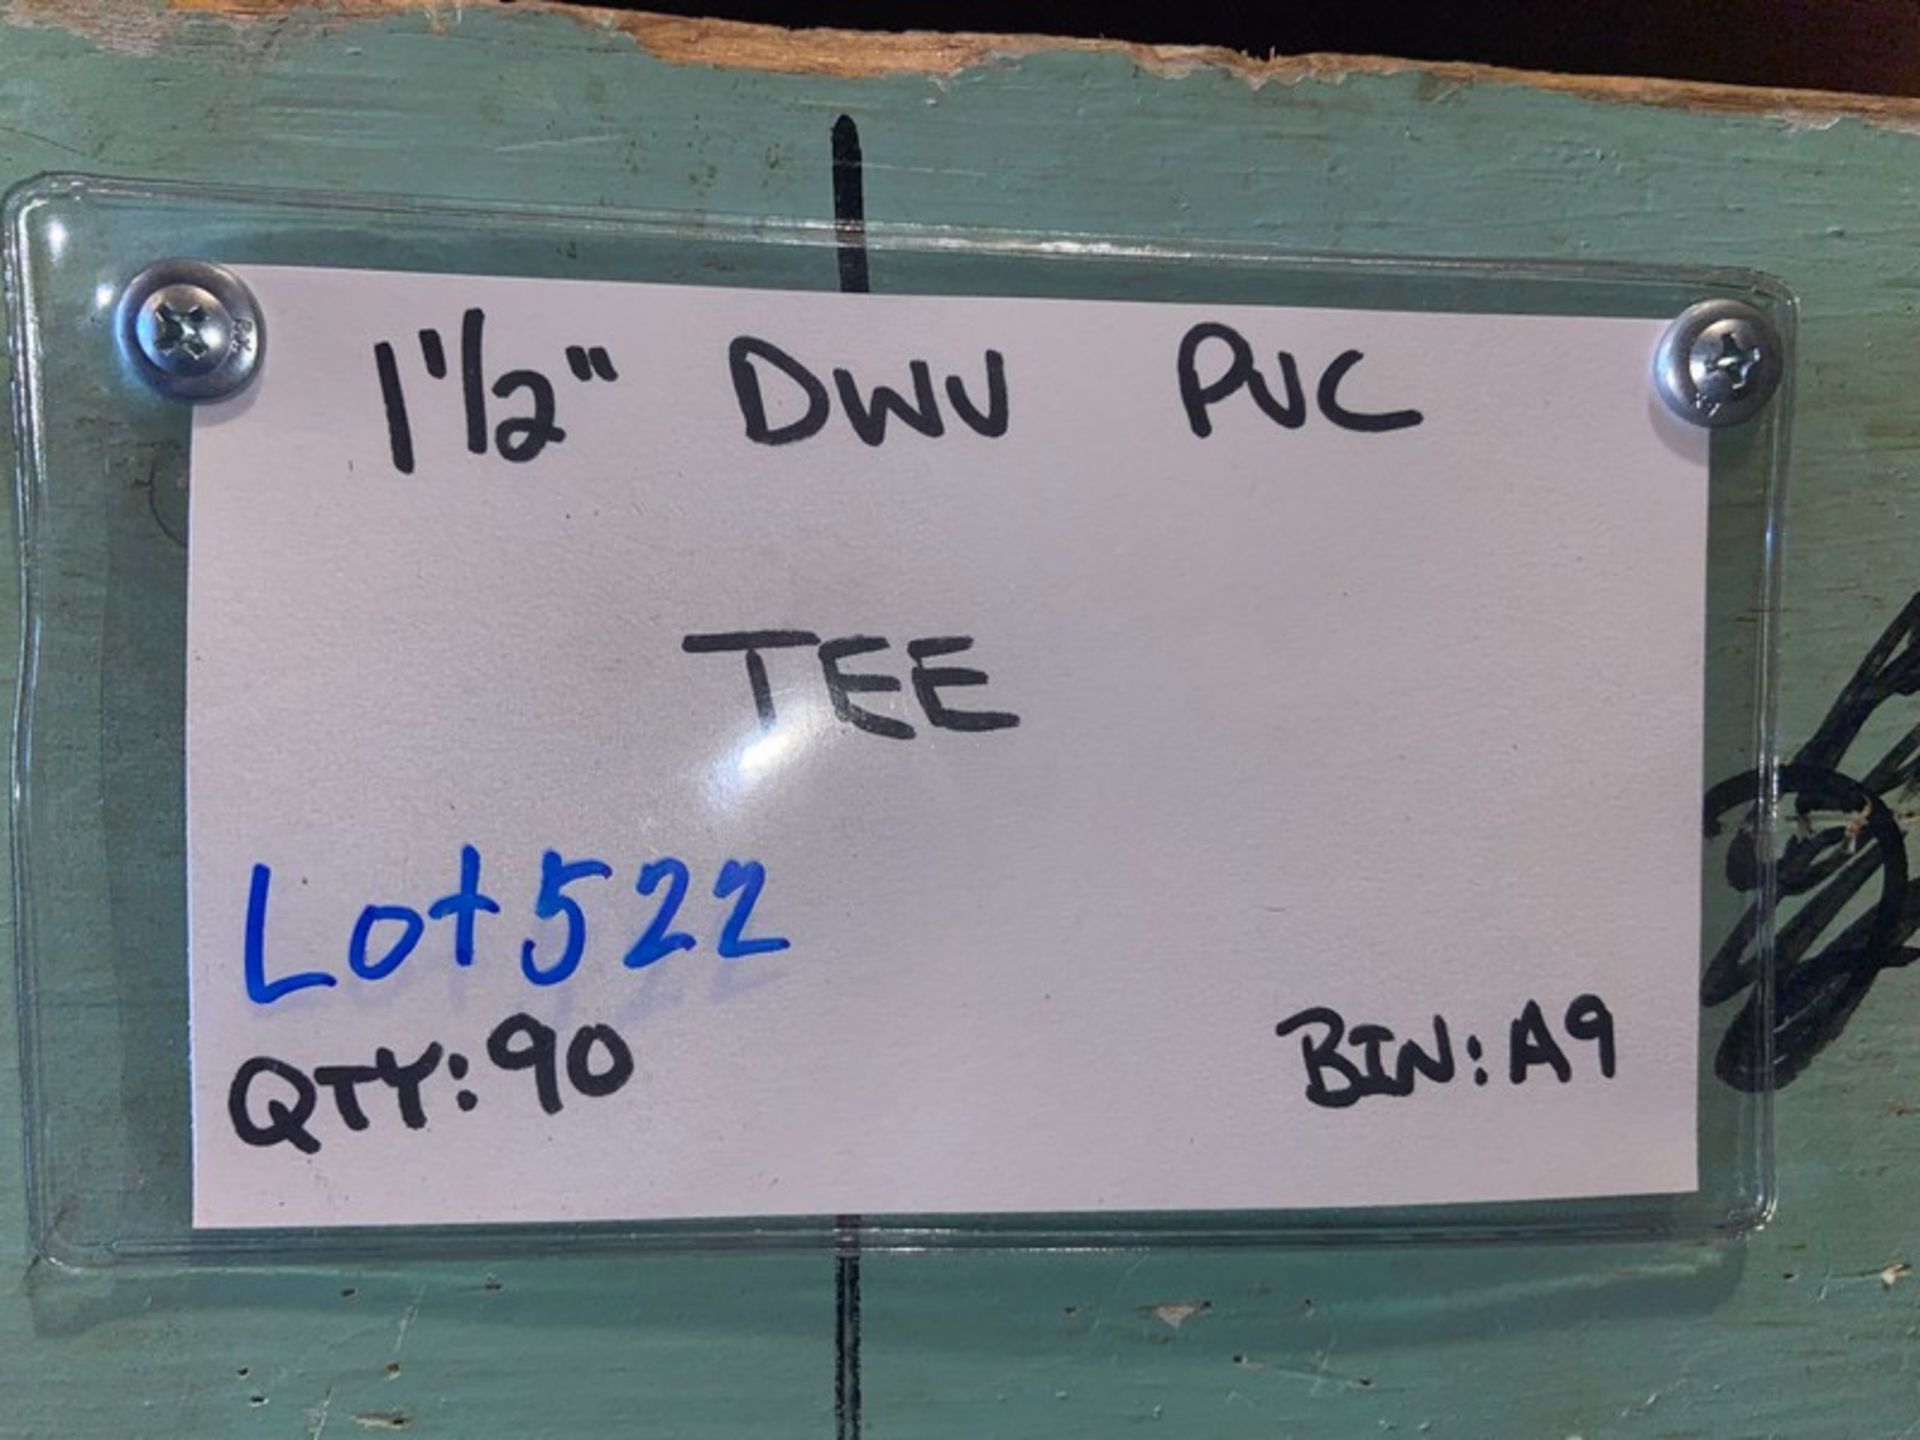 (90) 1 1/2” DWV PVC TEE (Bin:A9) (LOCATED IN MONROEVILLE, PA) - Bild 5 aus 5